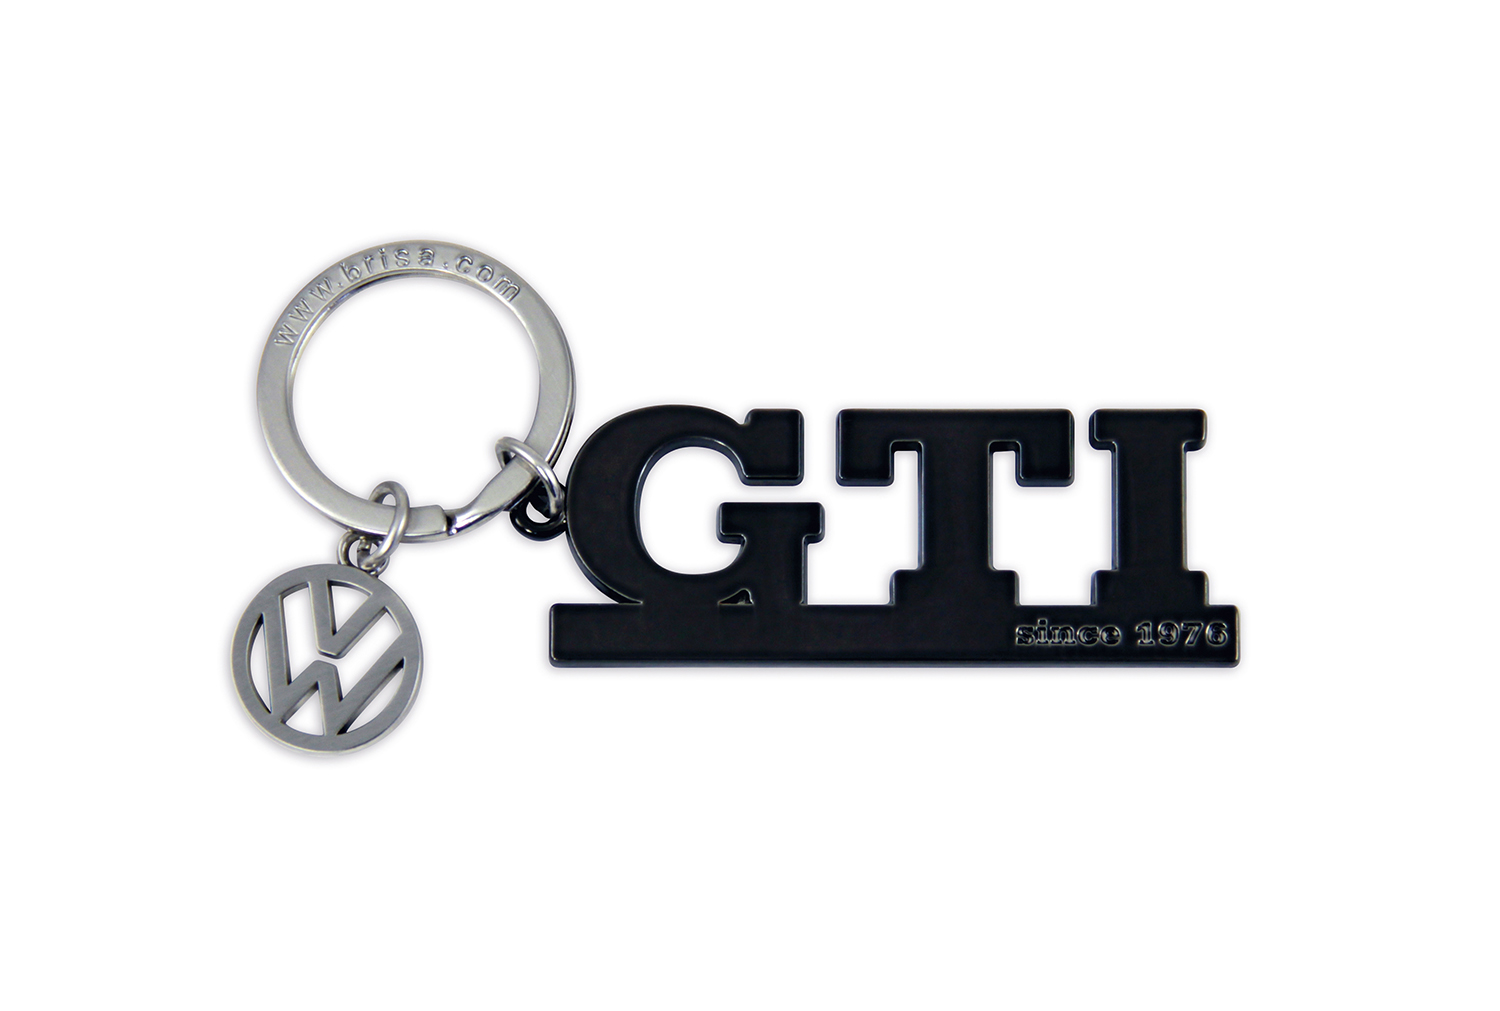 Portachiavi VW GTI con charm